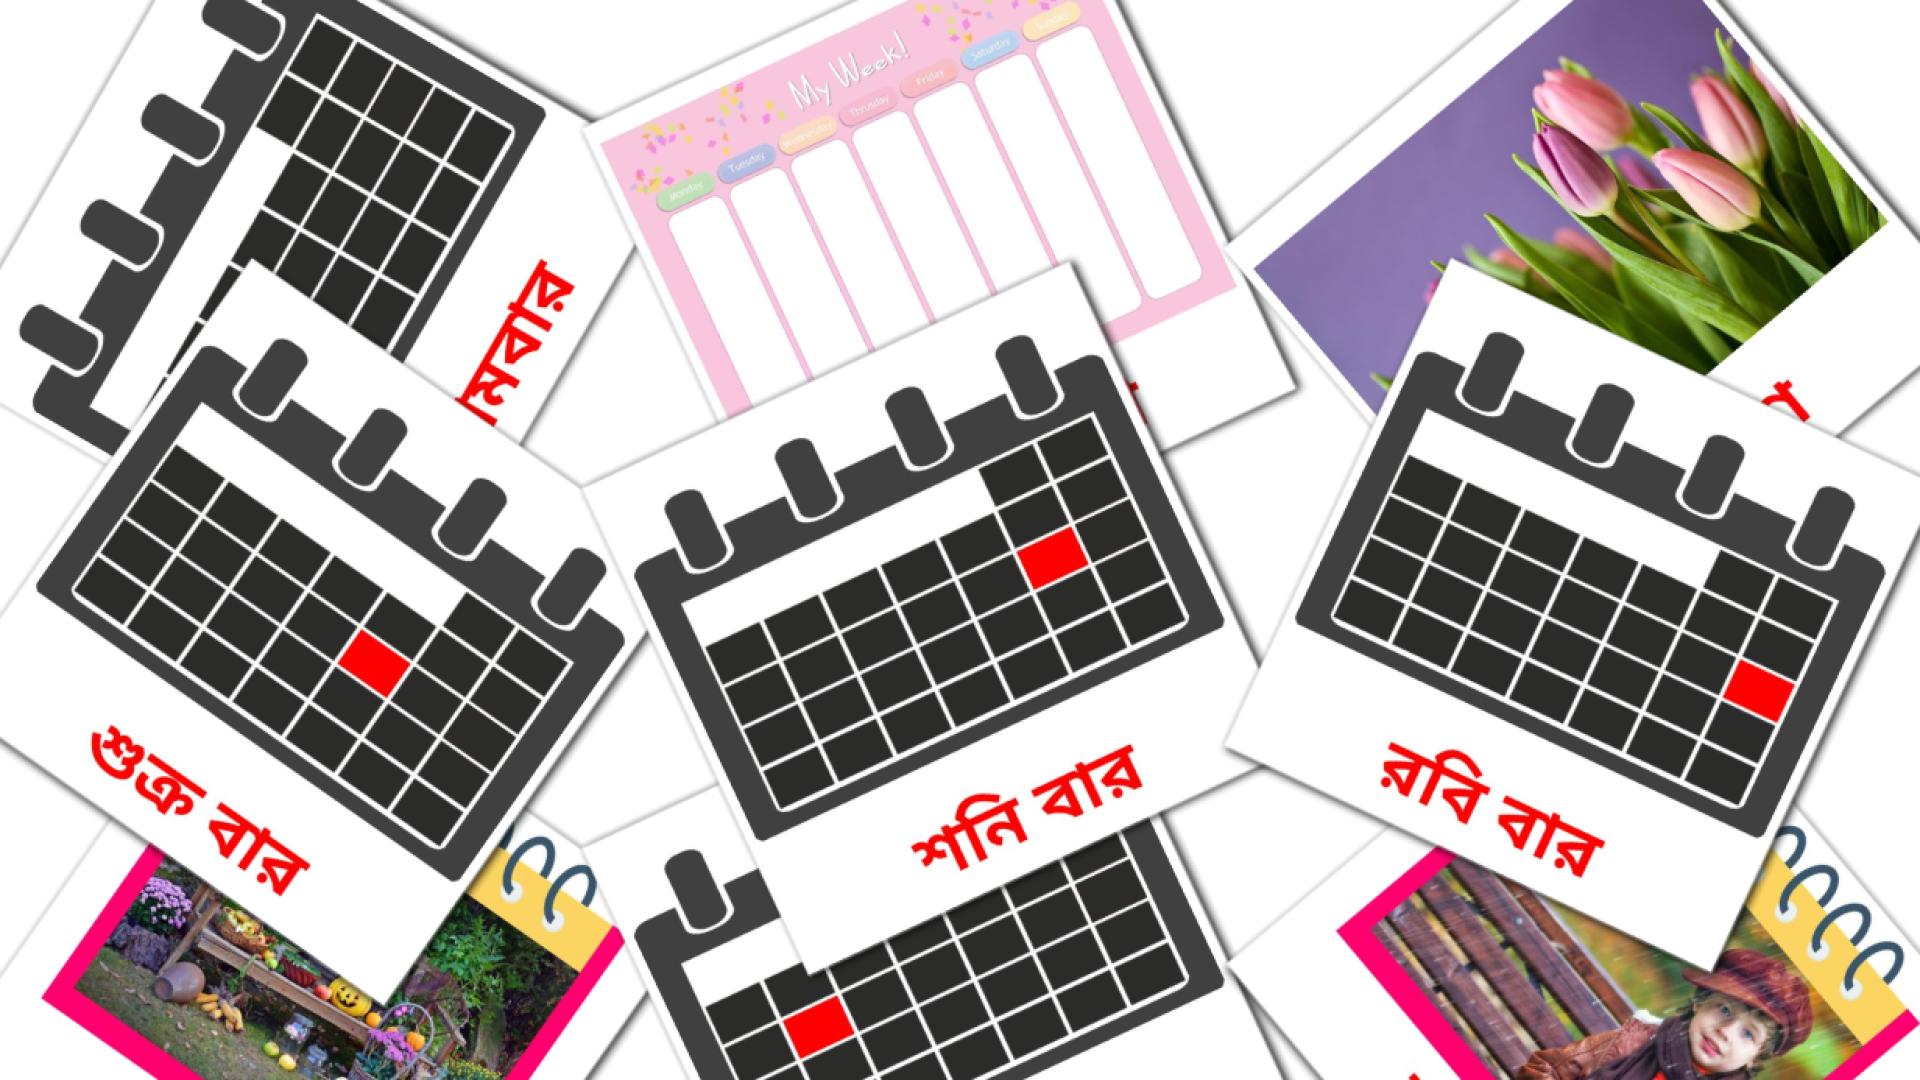 পঞ্জিকা bengali vocabulary flashcards